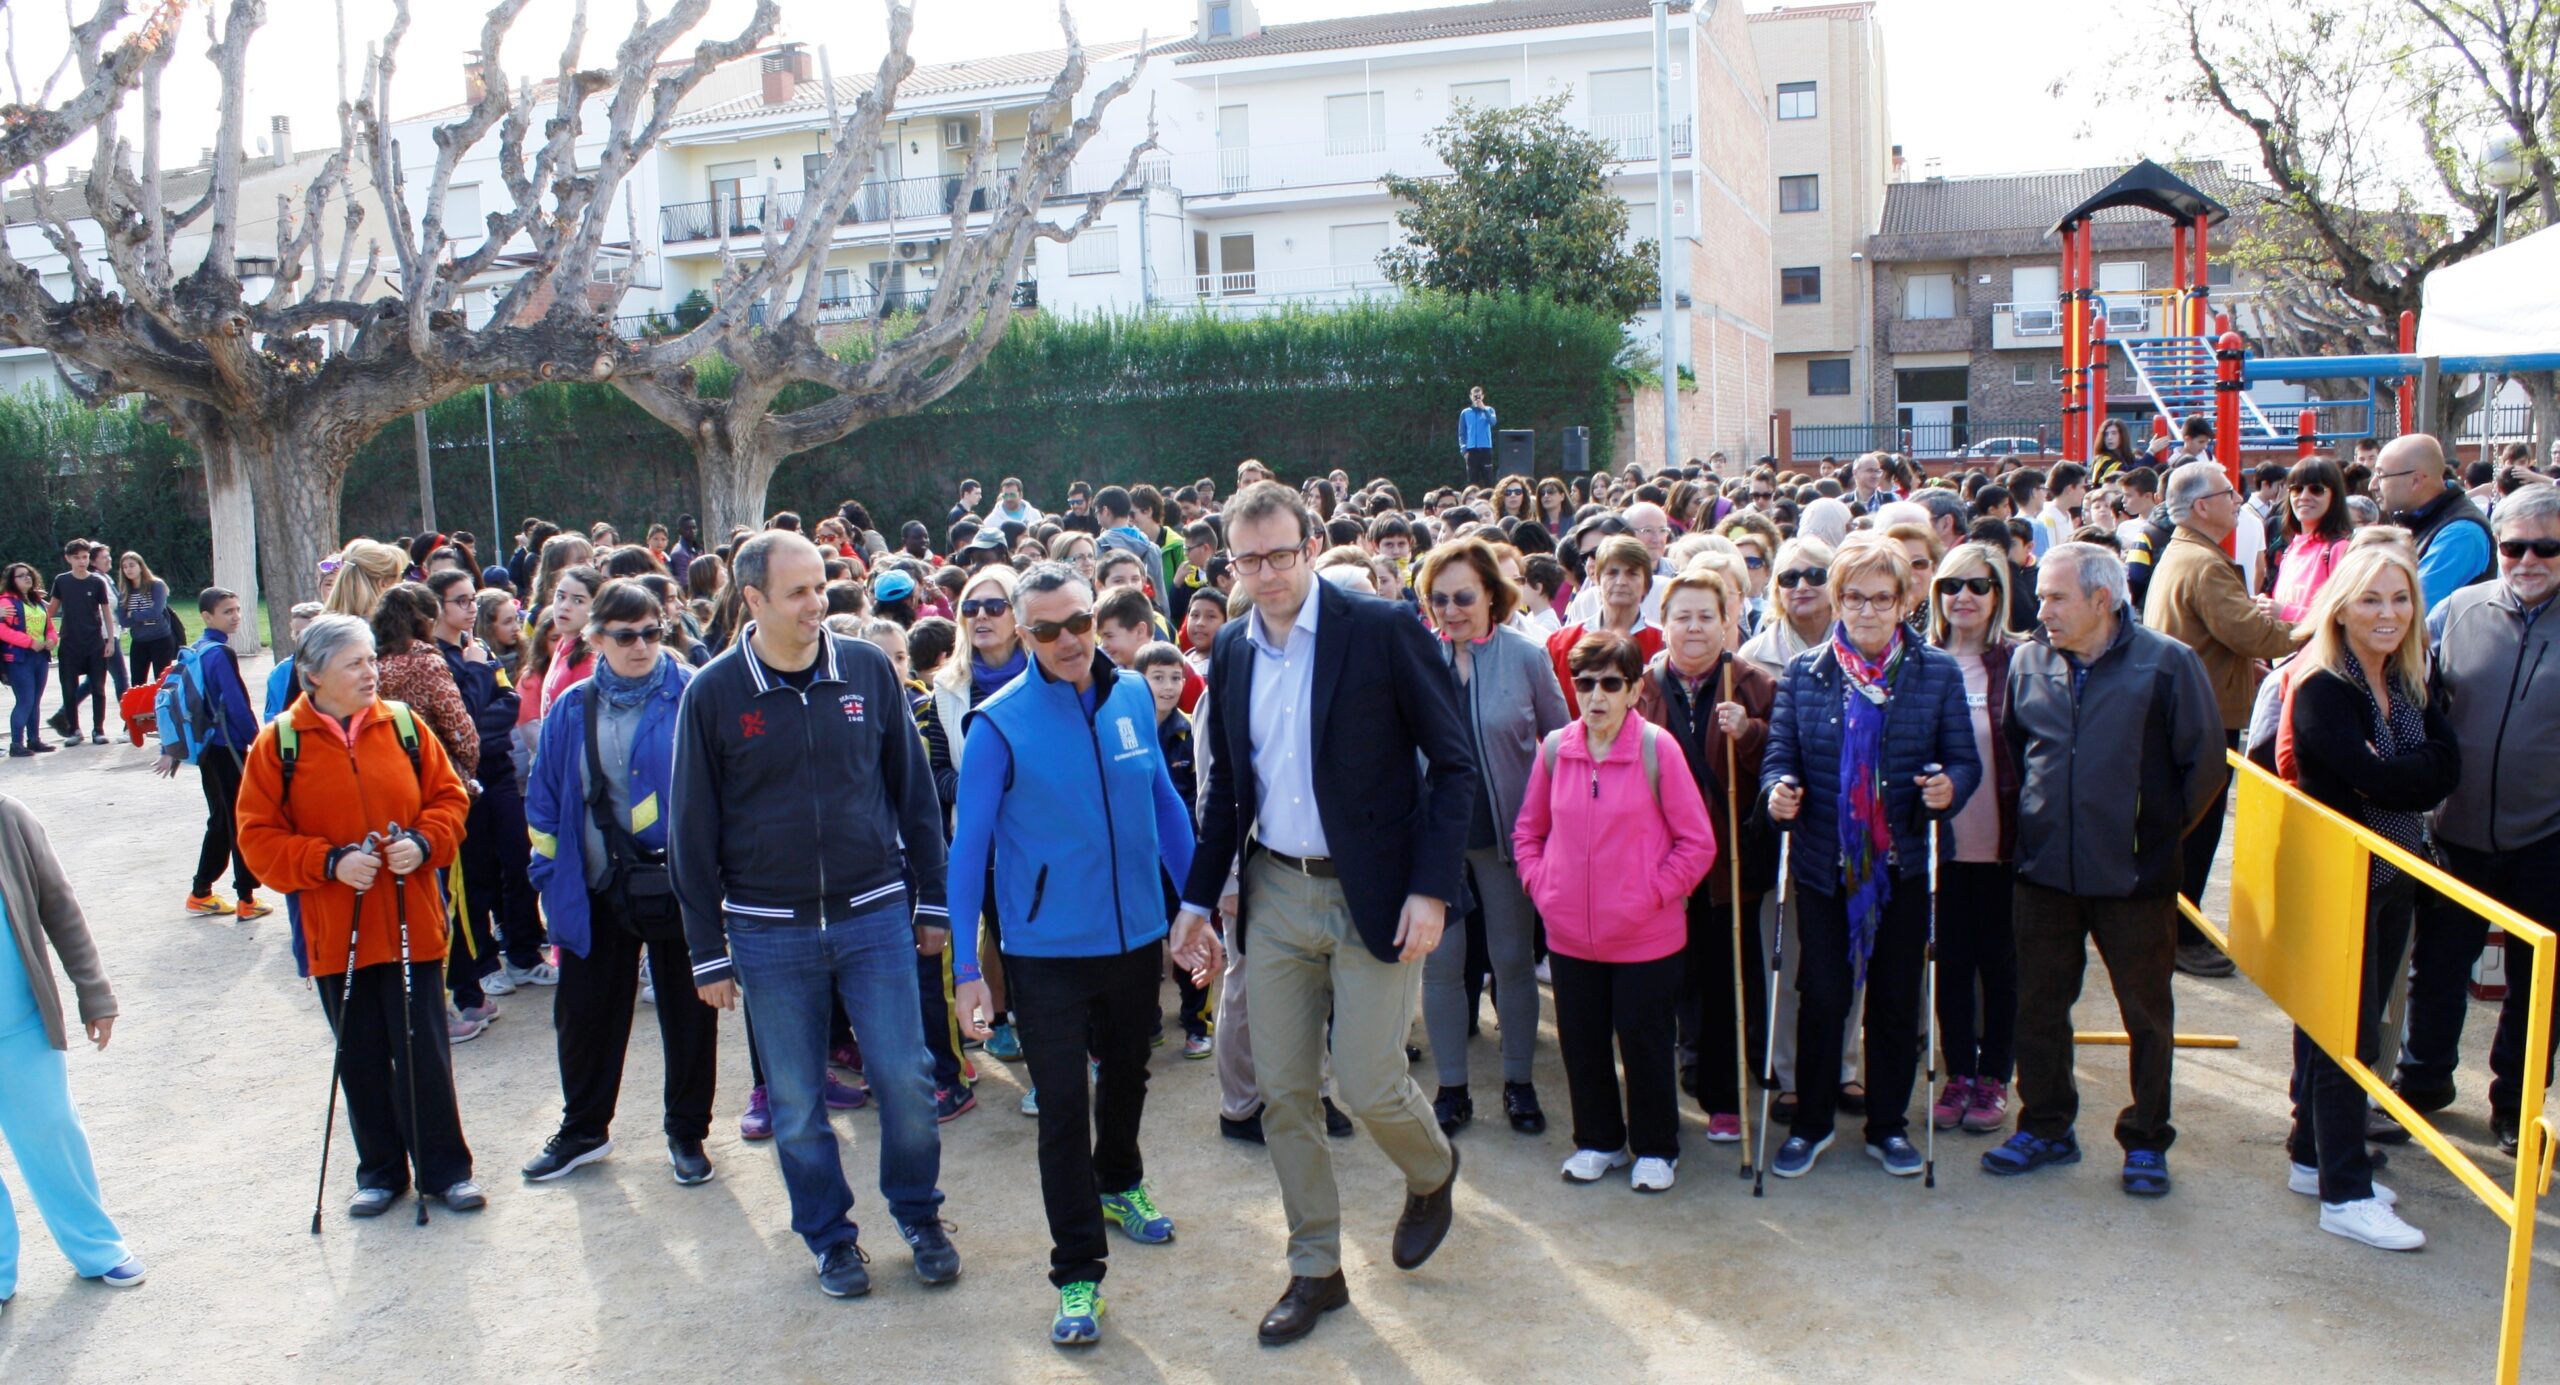 La 2a Caminada per l’Alzheimer a Mollerussa aplega 350 participants